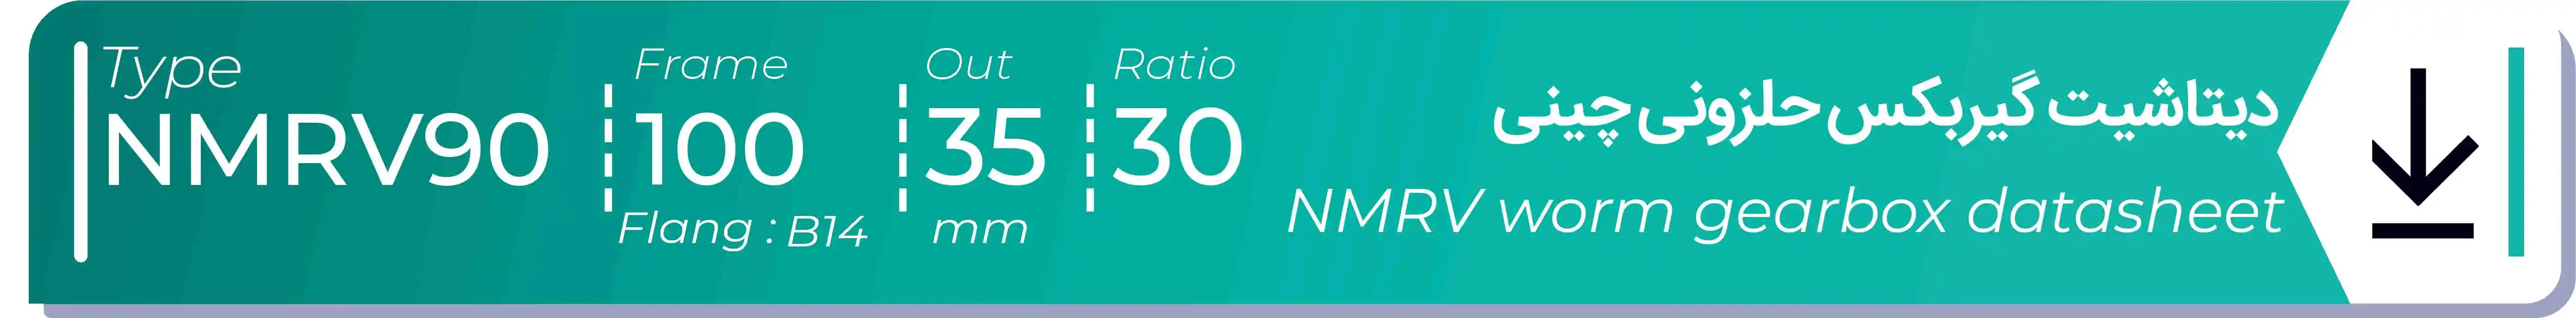  دیتاشیت و مشخصات فنی گیربکس حلزونی چینی   NMRV90  -  با خروجی 35- میلی متر و نسبت30 و فریم 100